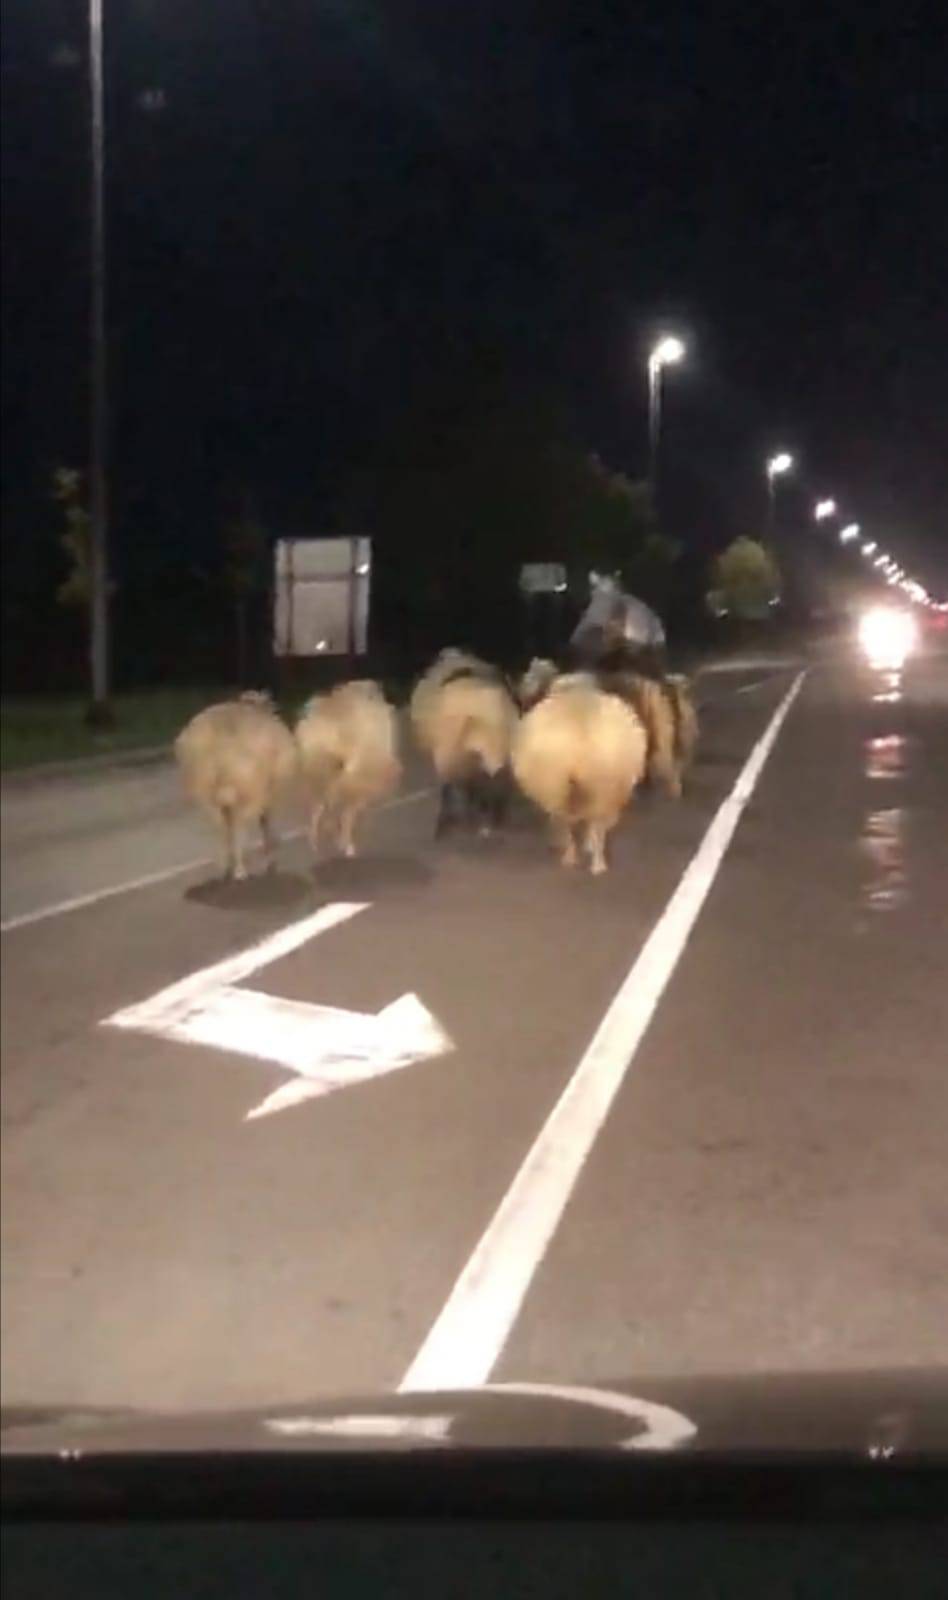 Konj glumio pastira u Županji: Izveo je stado ovaca na cestu i radio kaos, policija ih zaustavila